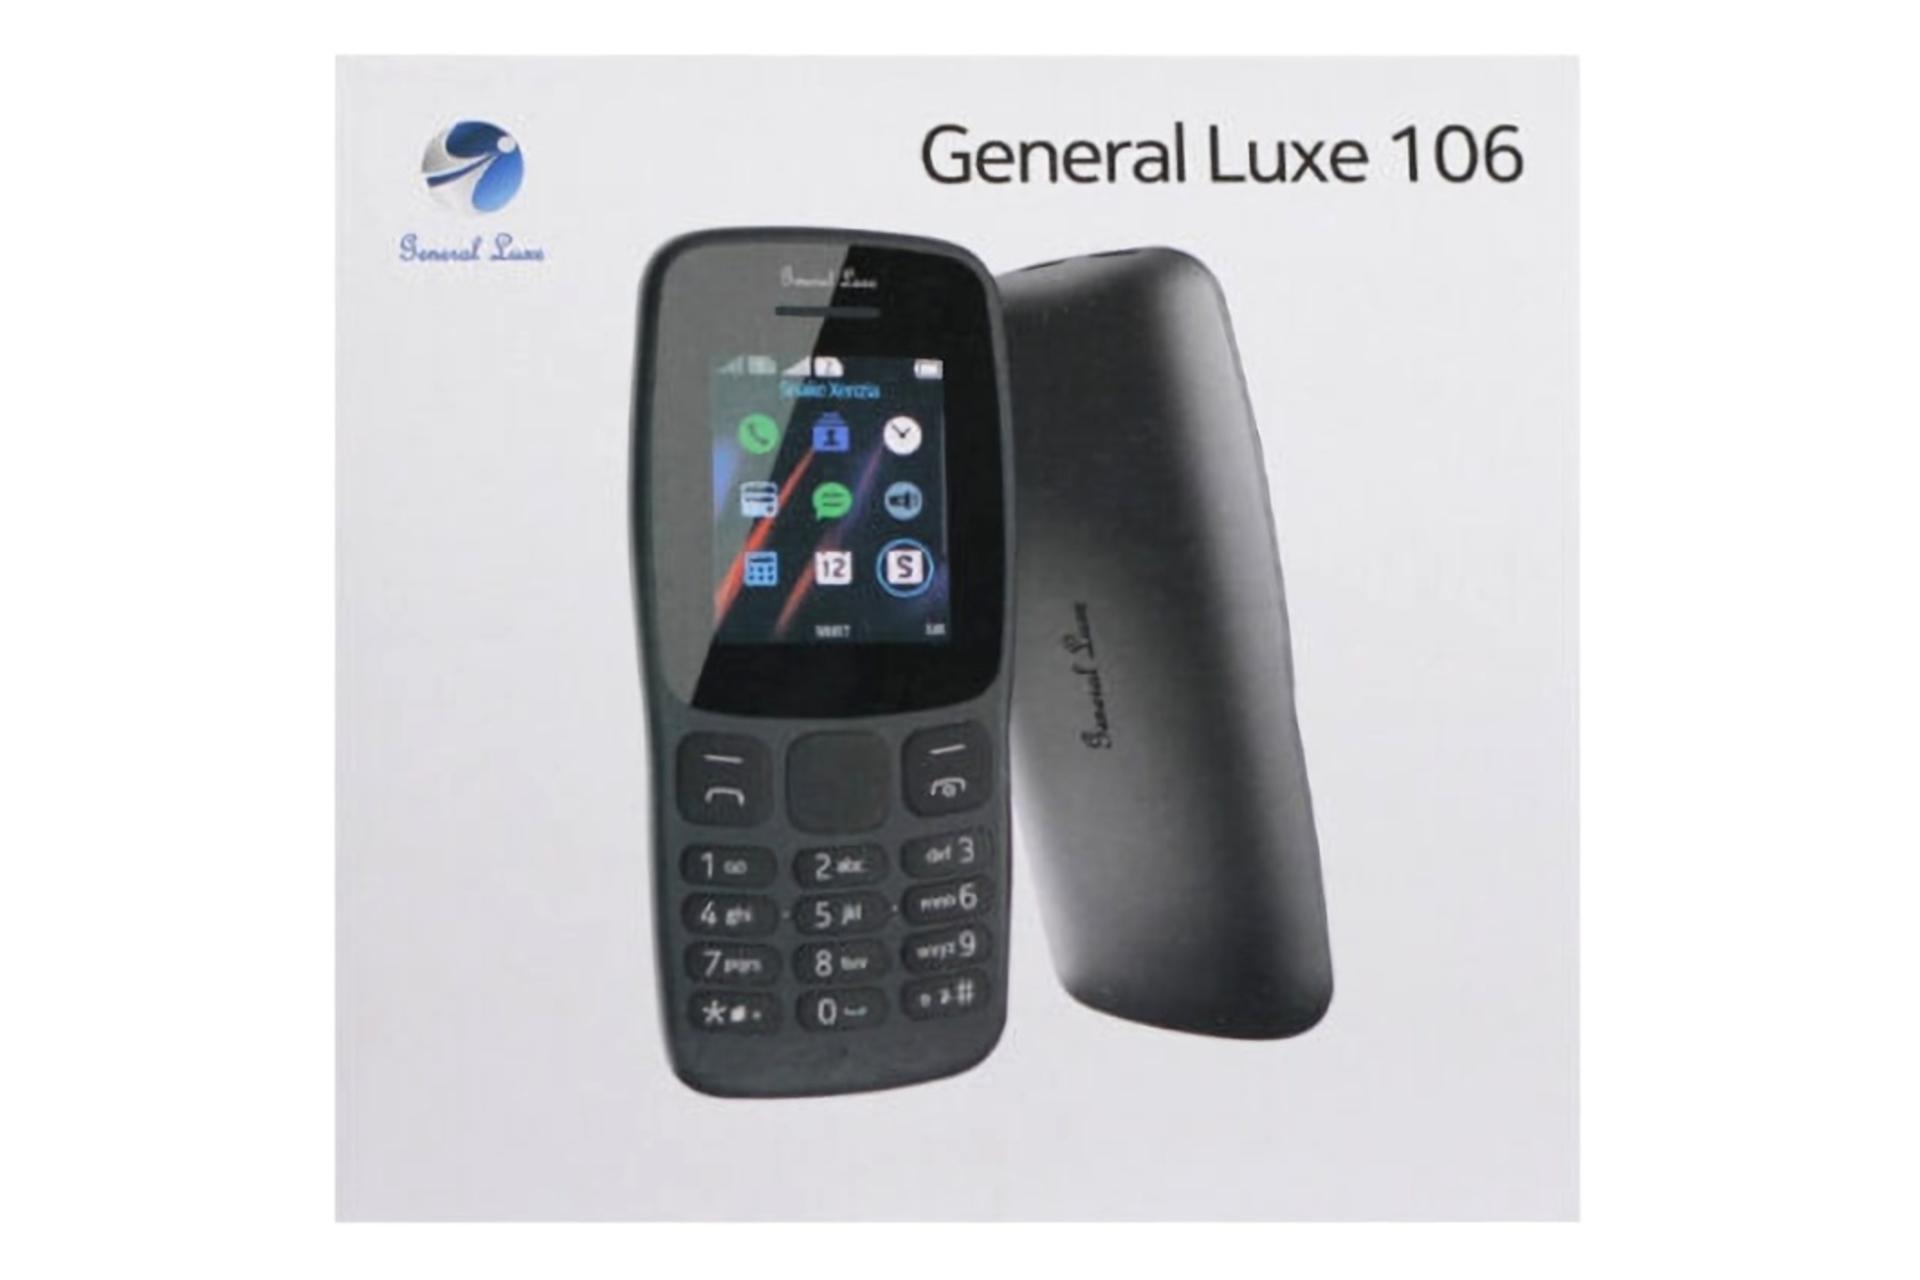 جعبه گوشی موبایل 106 جی ال ایکس / GLX 106